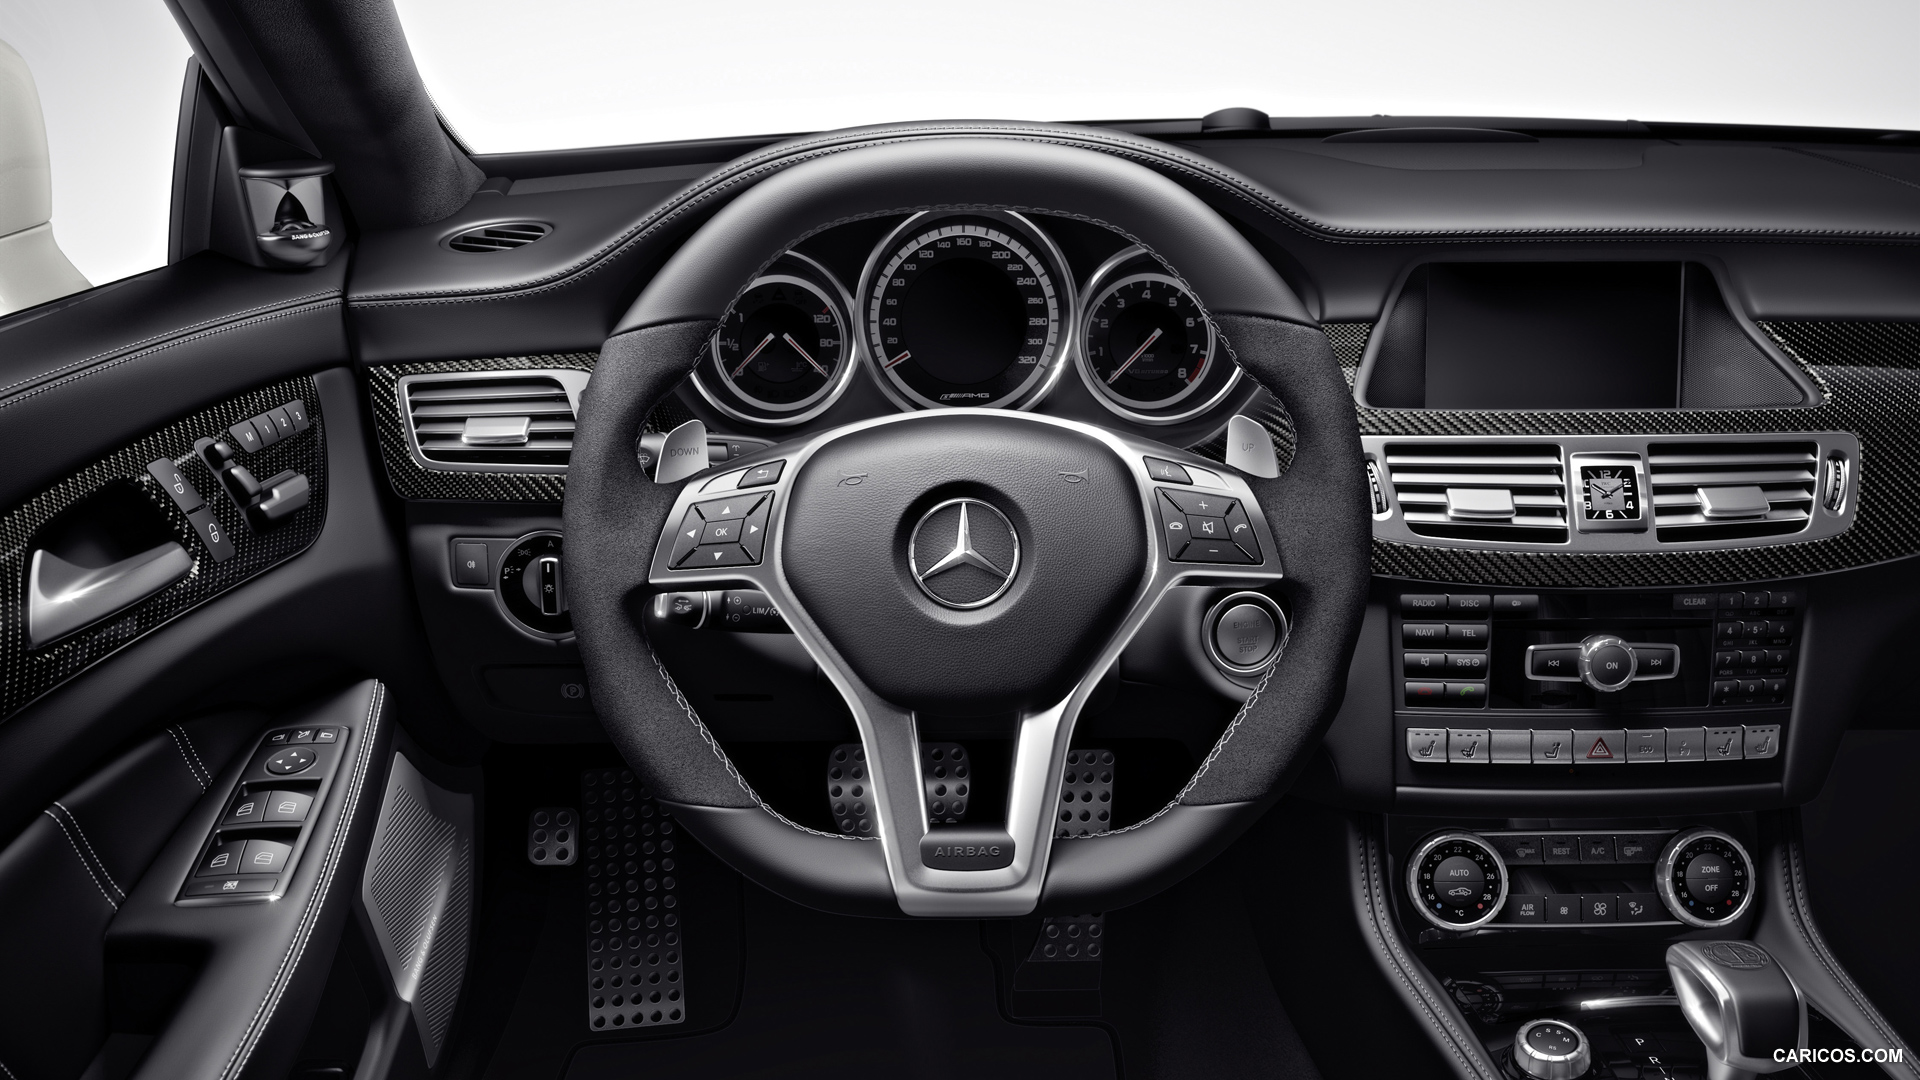 2014 Mercedes Benz Cls 63 Amg S Model Interior Hd